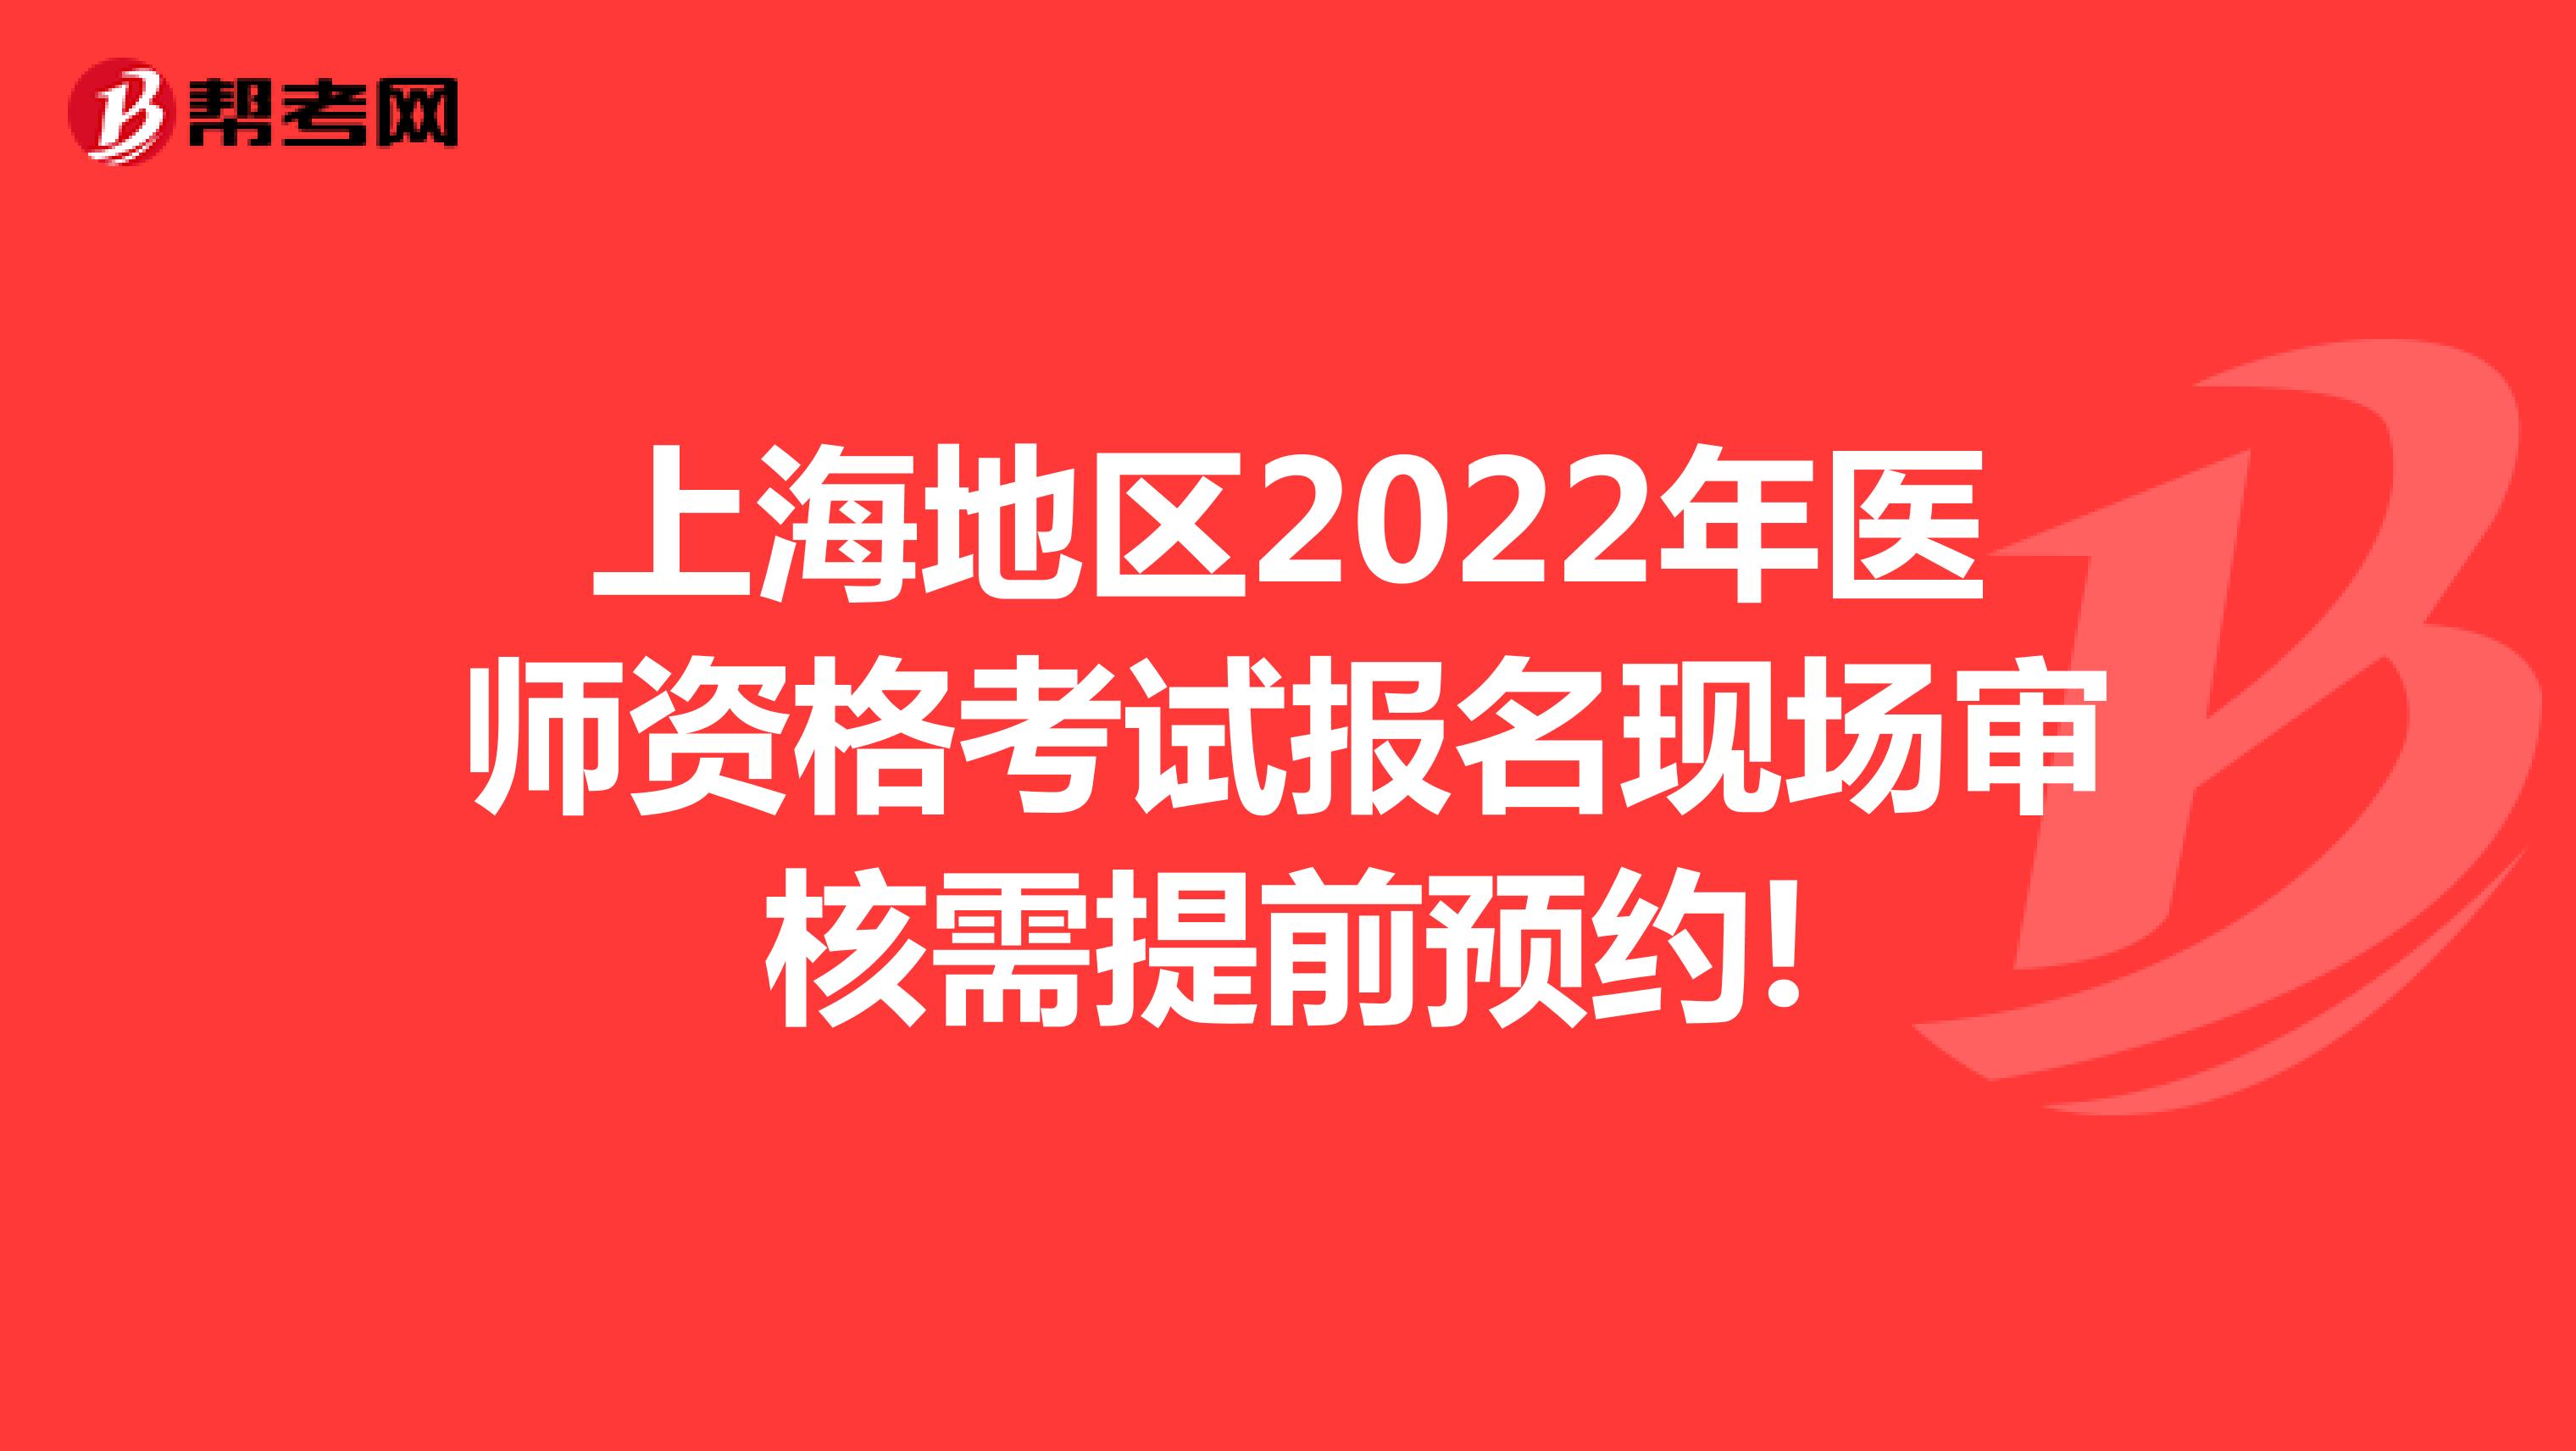 上海地区2022年医师资格考试报名现场审核需提前预约!